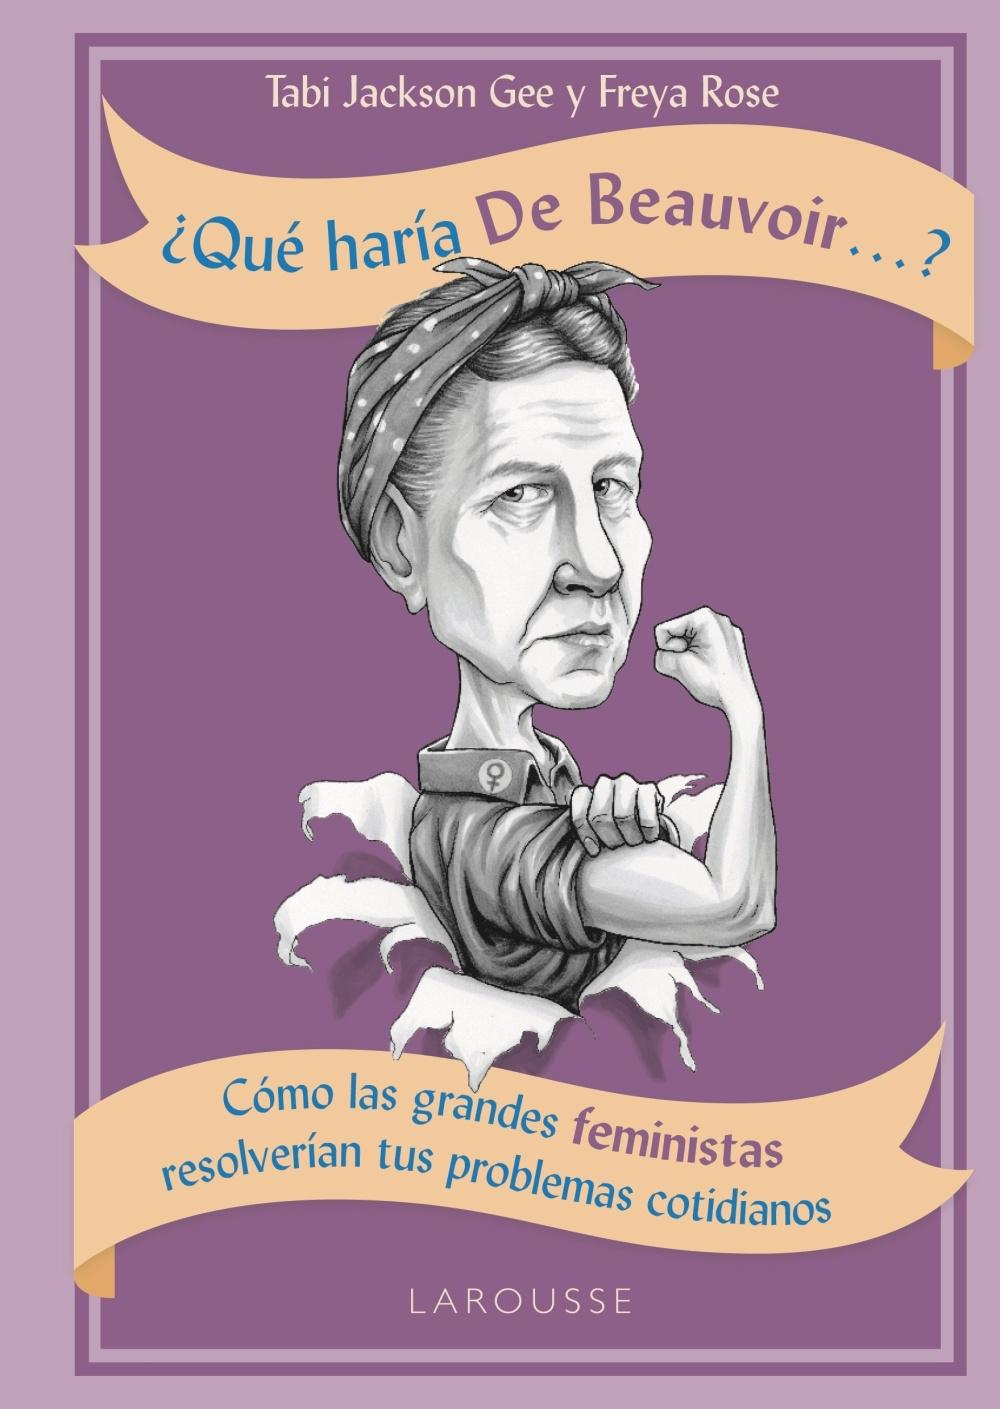 ¿Qué haría de Beauvoir...? "Cómo las grandes feministas resolverían tus problemas cotidianos"